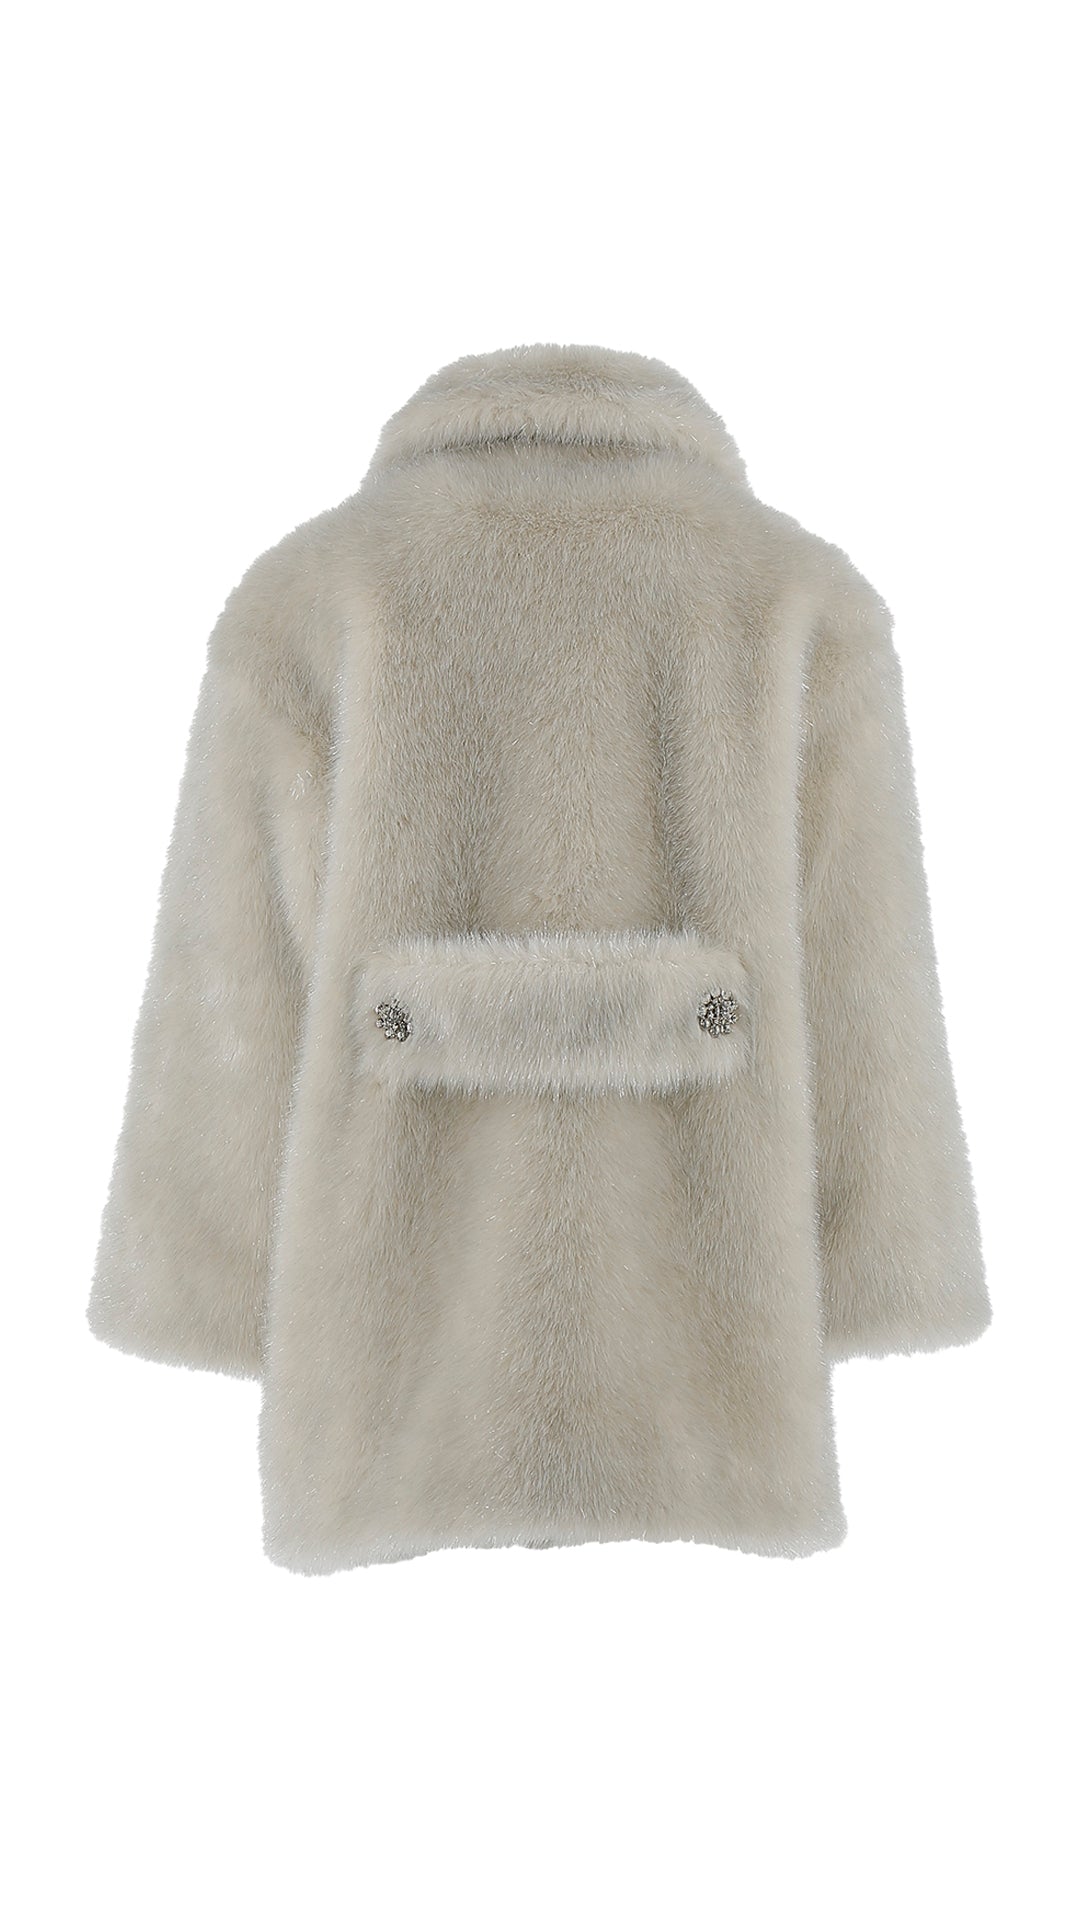 Philosophy Jewel Buttons Faux Fur Jacket